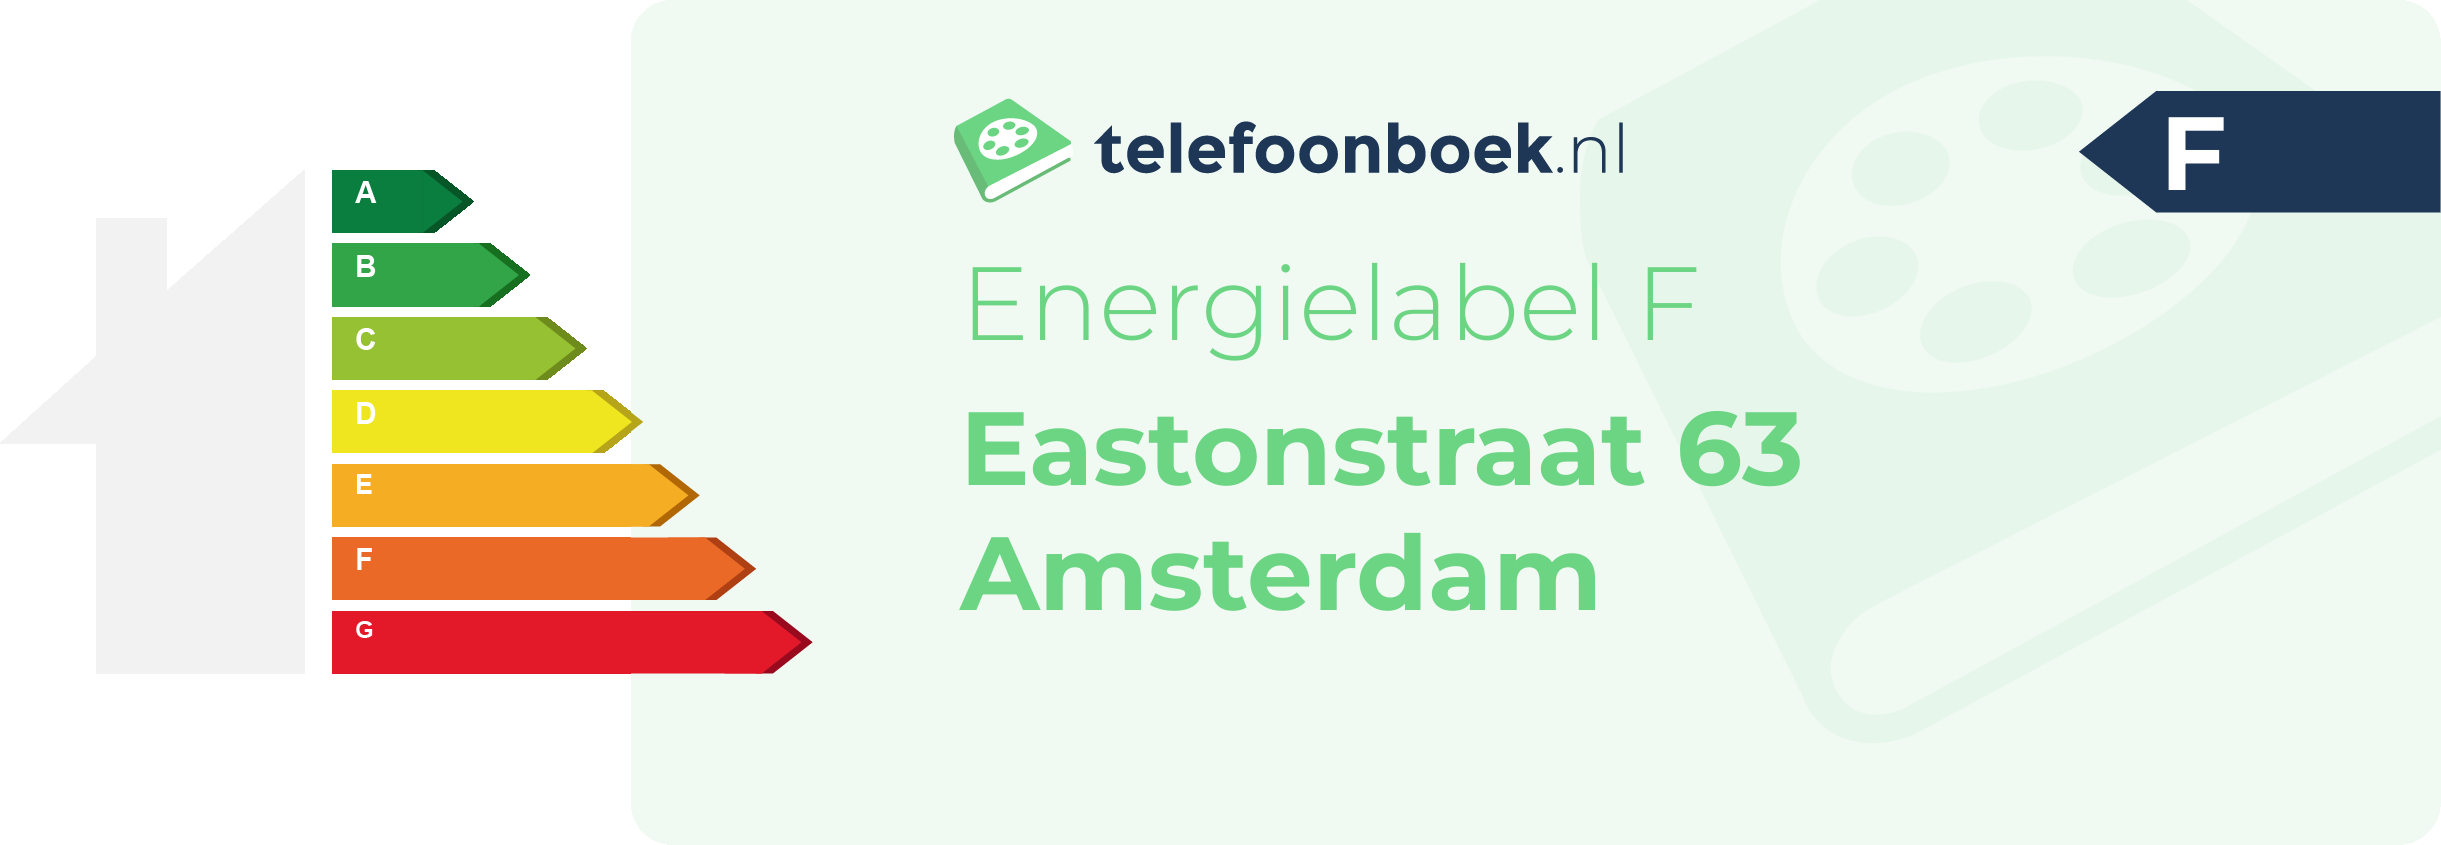 Energielabel Eastonstraat 63 Amsterdam